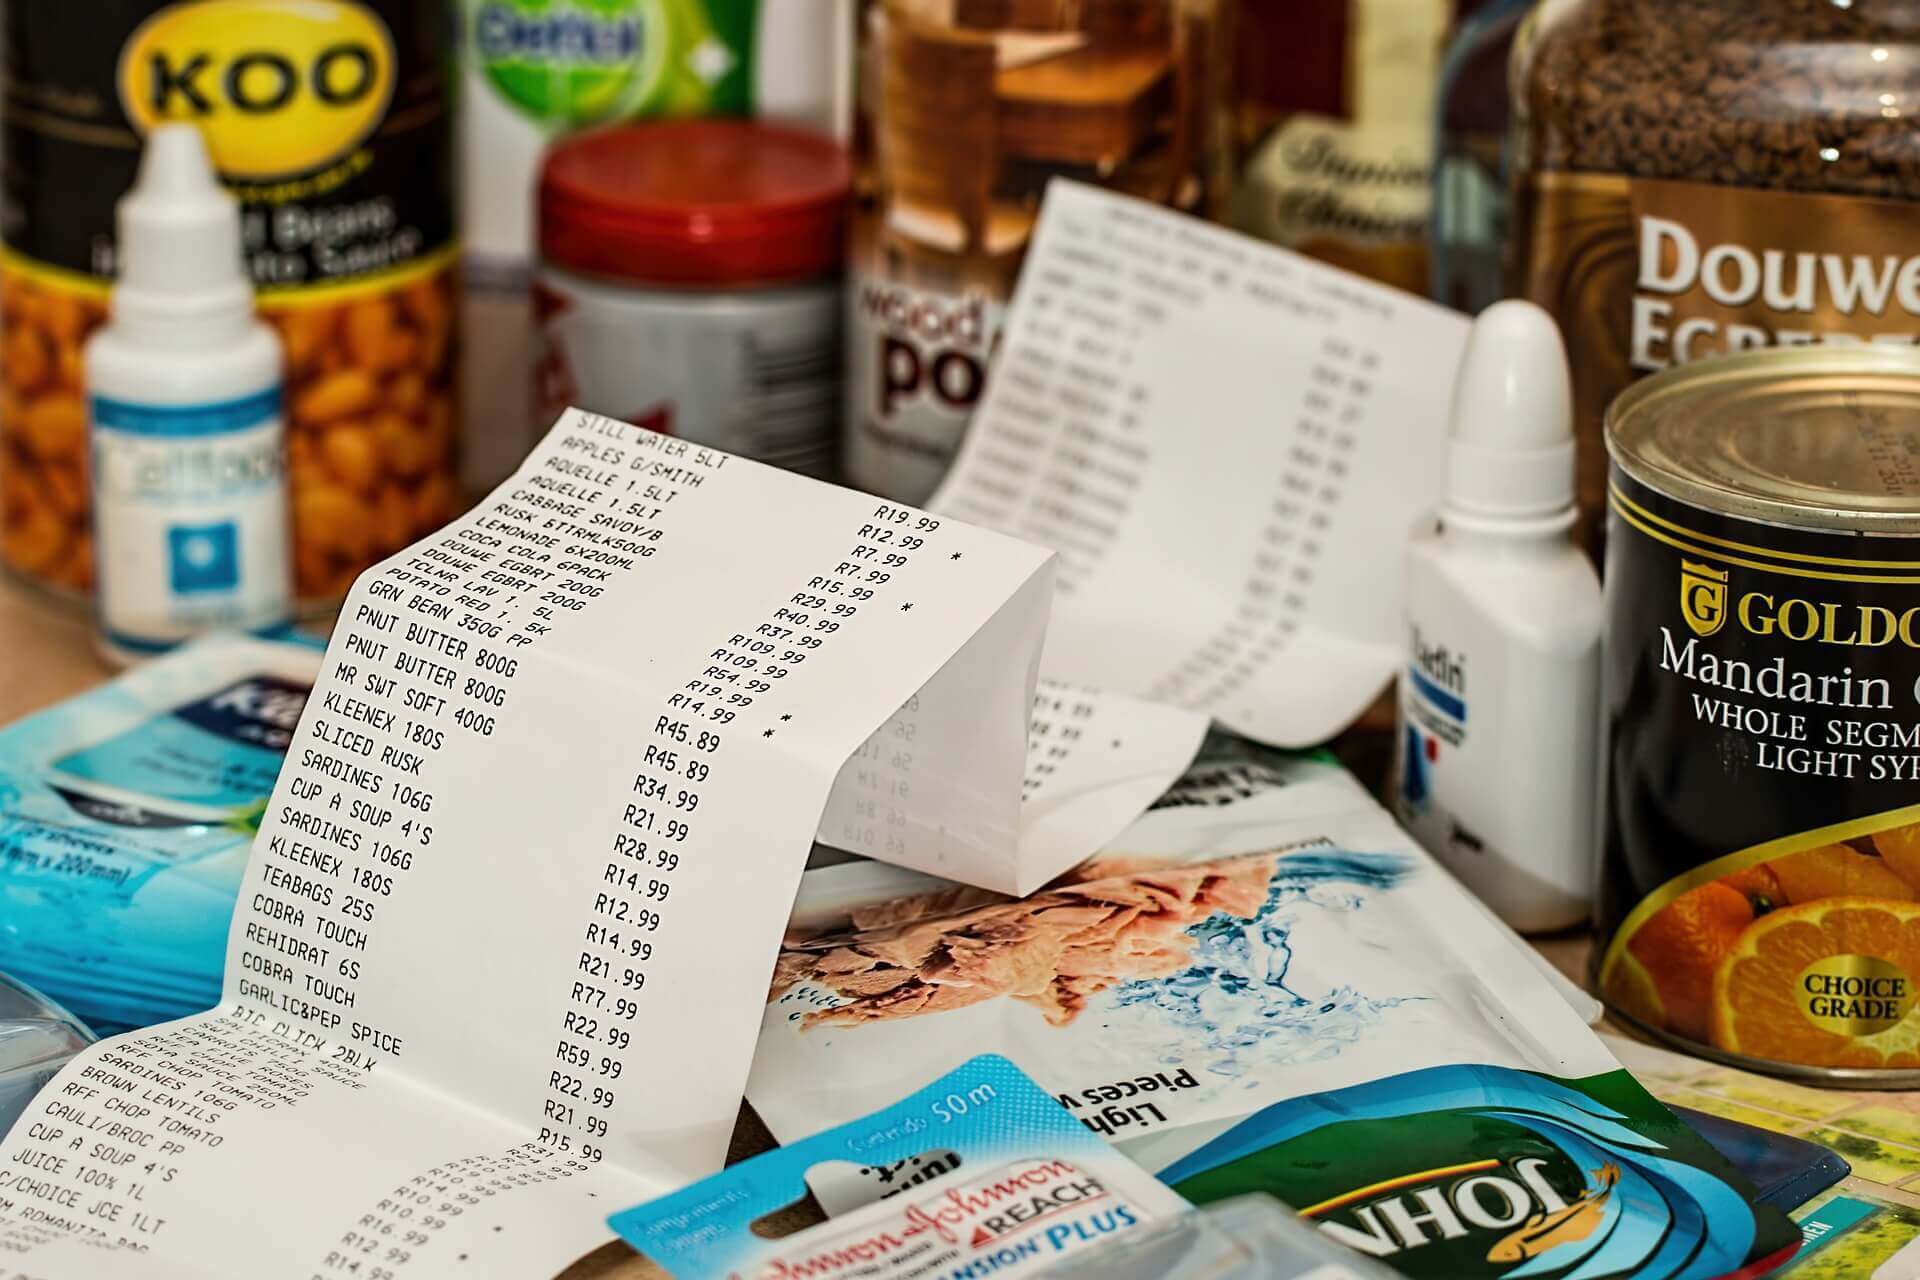 No centro da imagem, uma nota fiscal de uma grande compra. Em volta do papel, vários produtos de alimentação e higiene pessoal